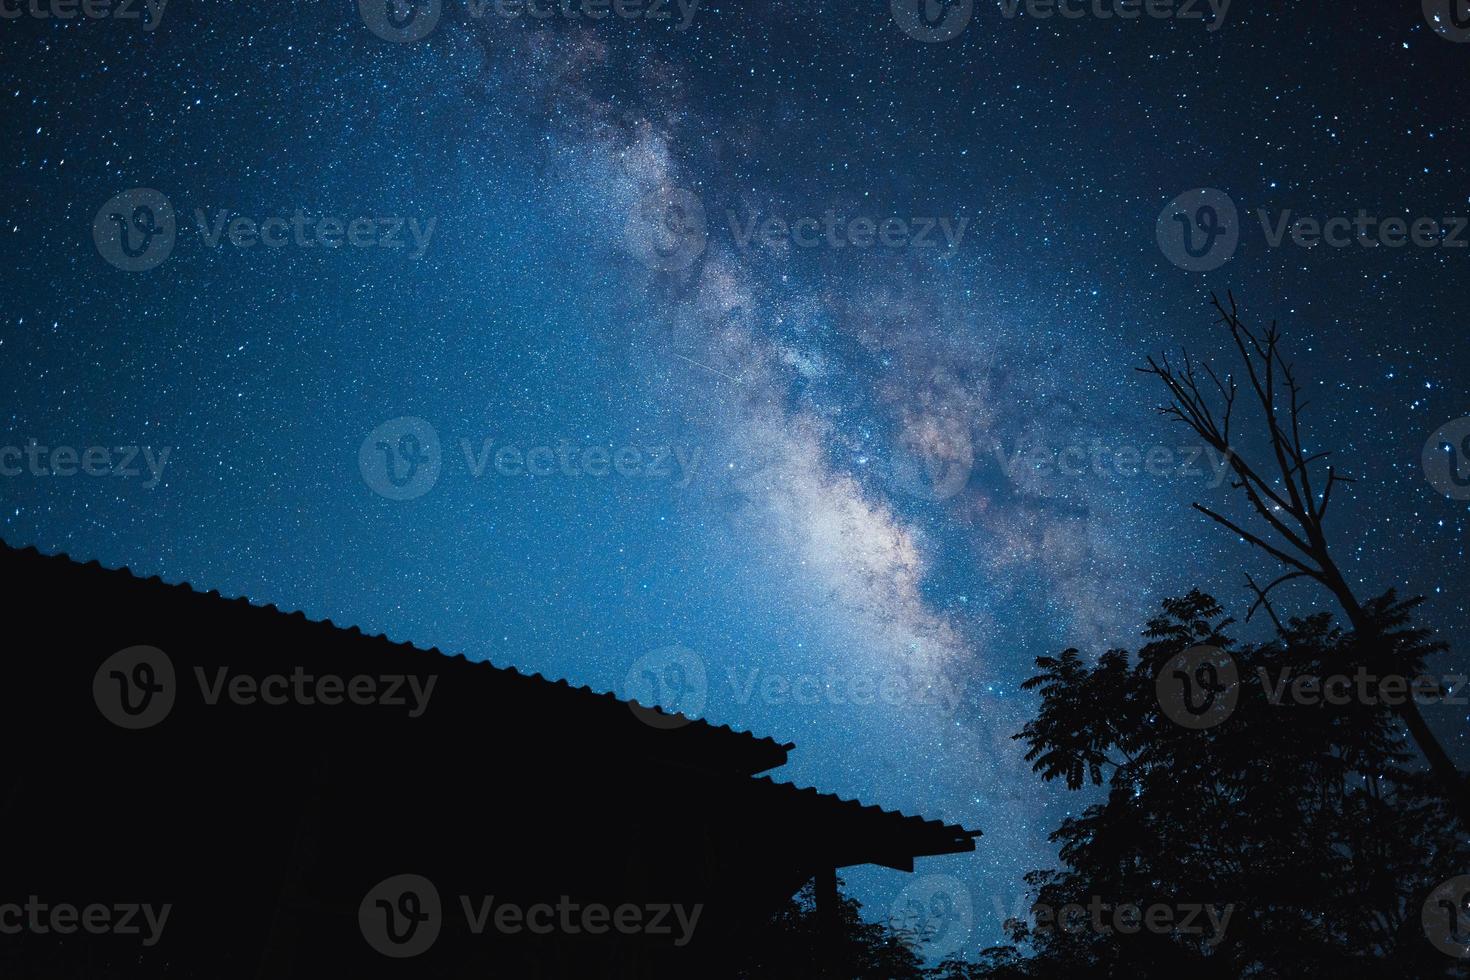 scène de nuit fond de voie lactée, arbres contre le ciel la nuit photo